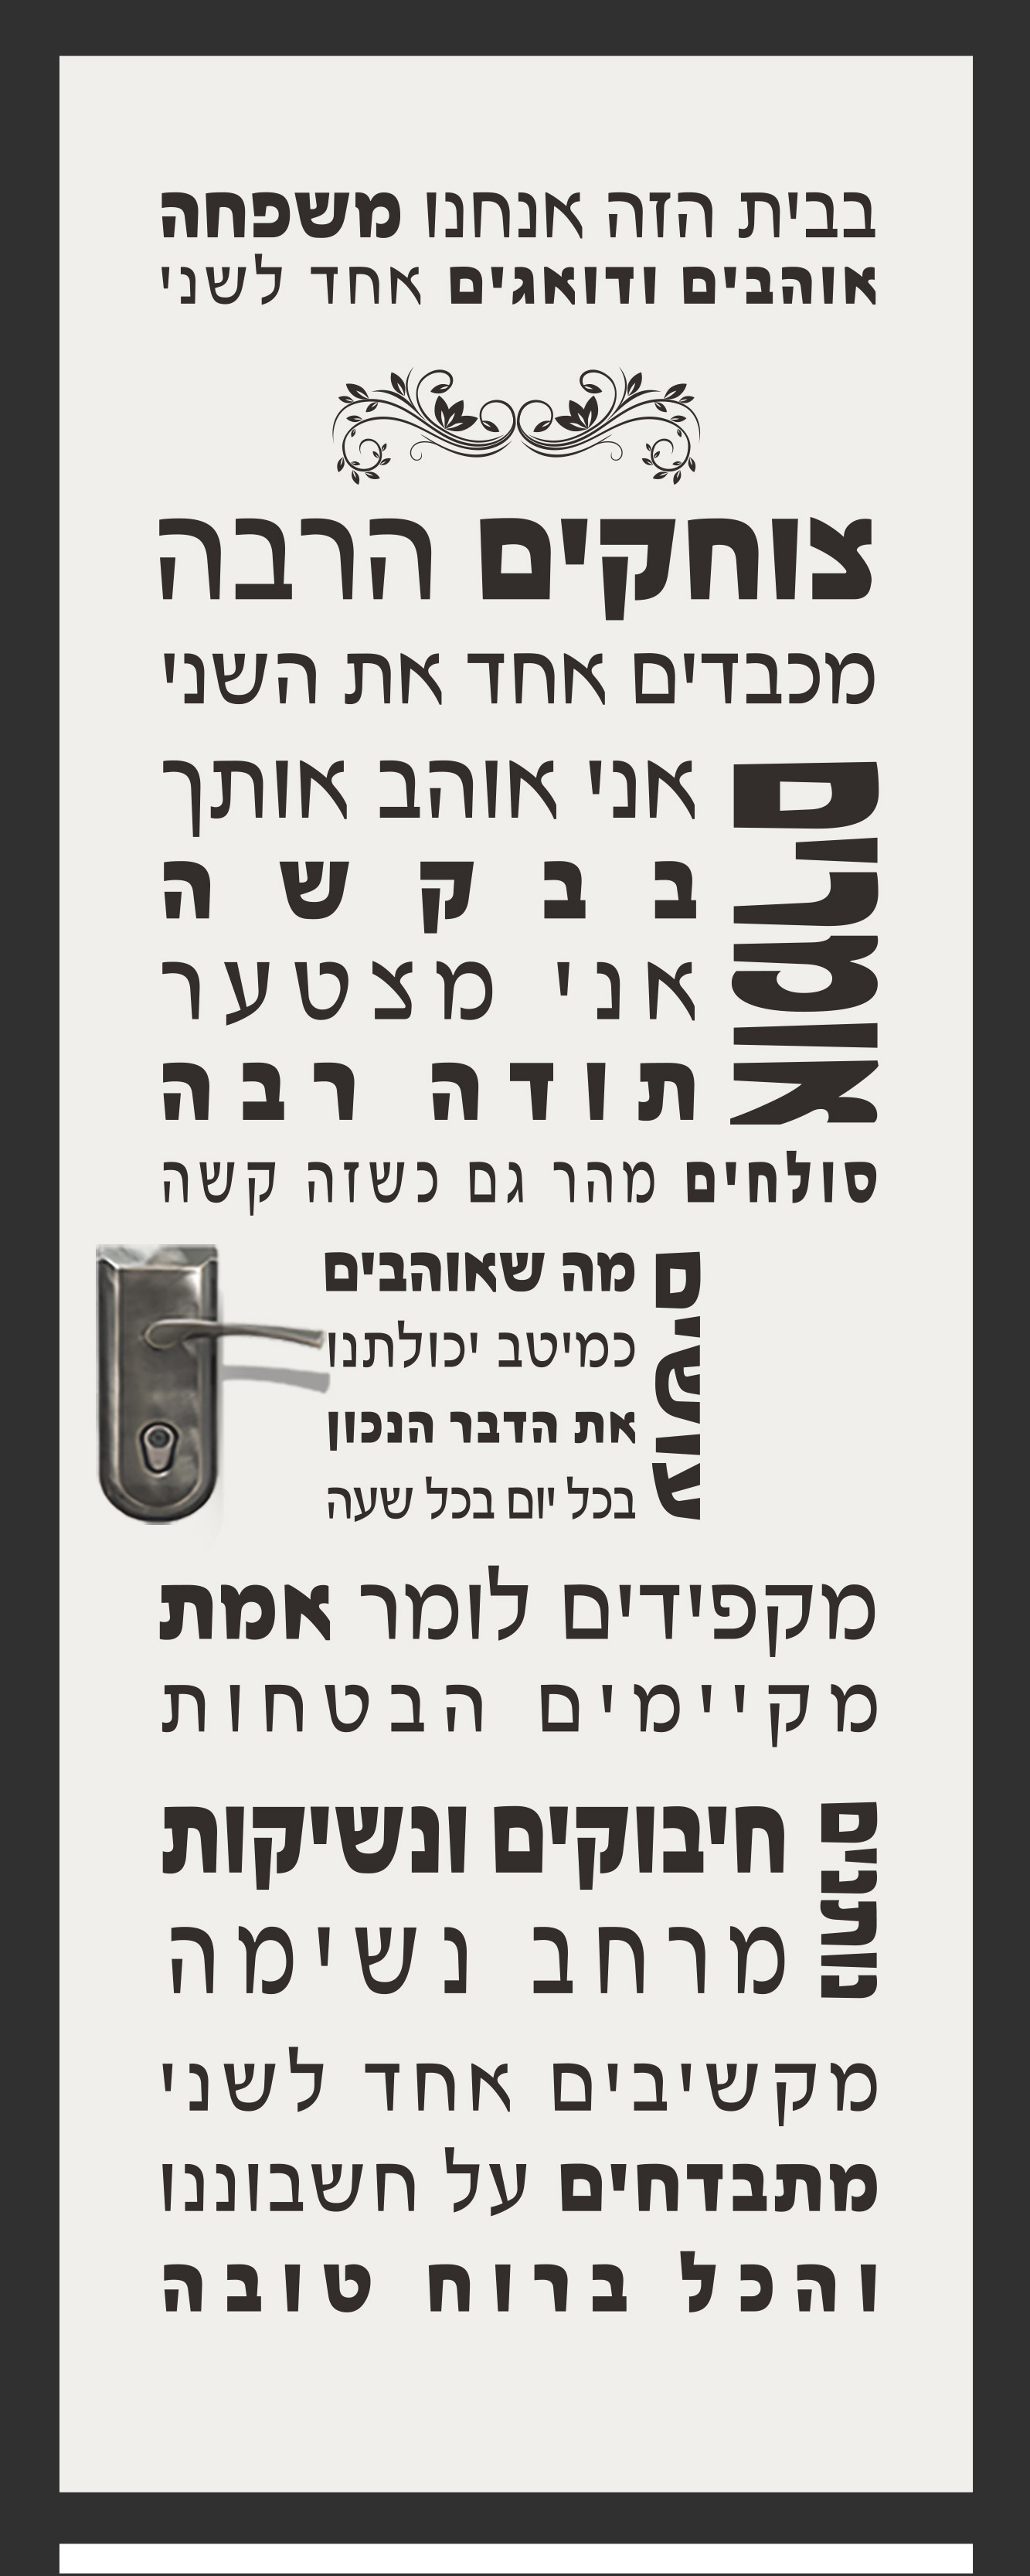 דלת עם ערכים עברית שחור לבן